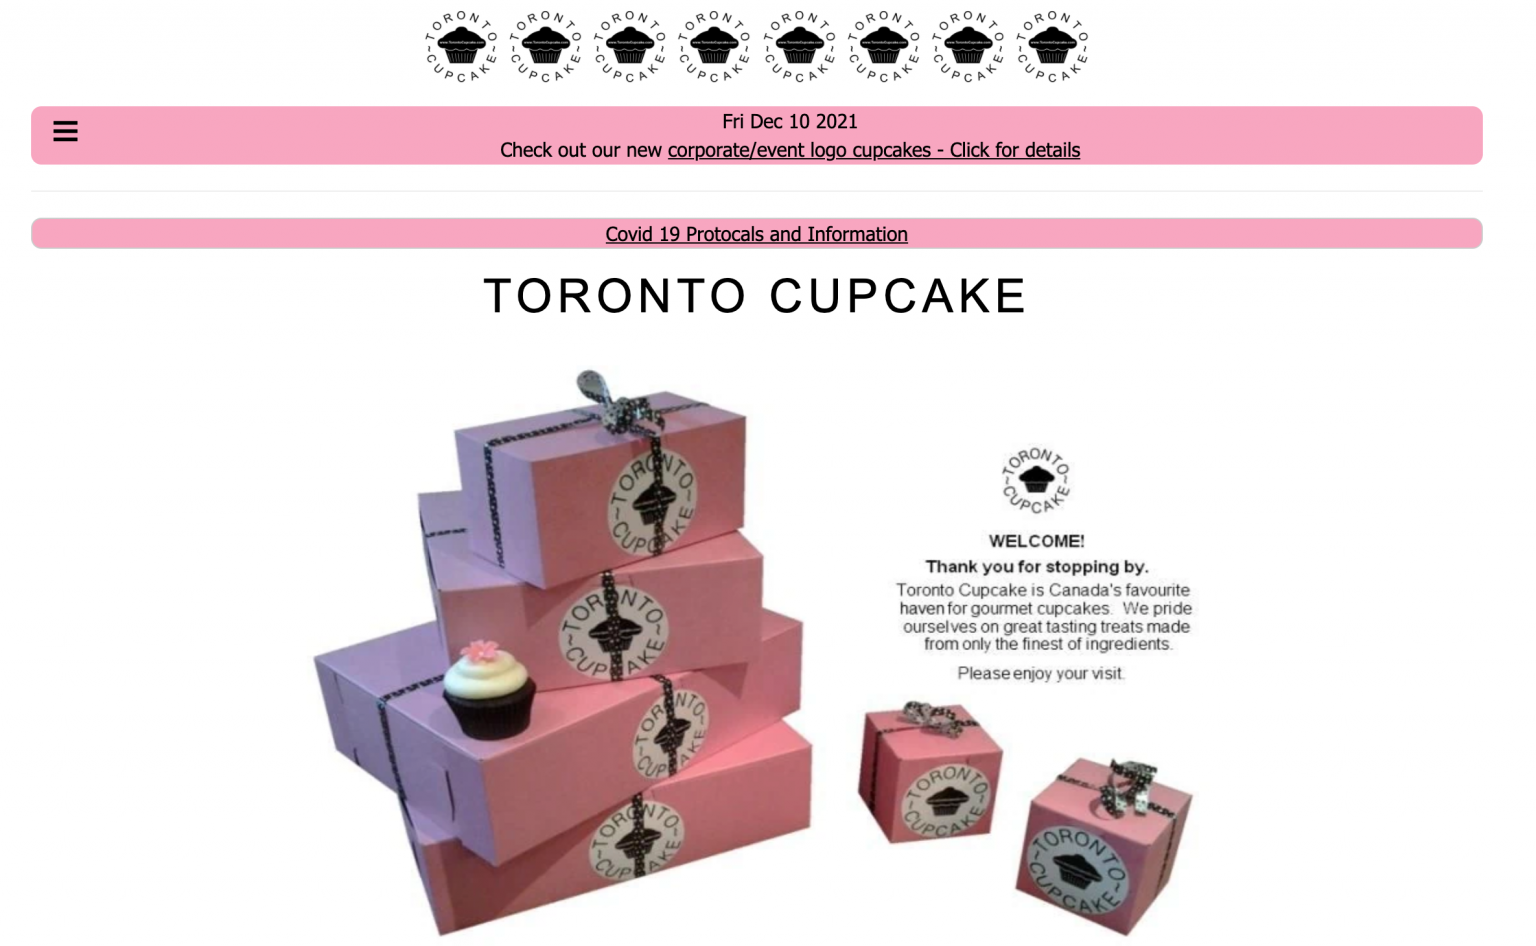 Toronto Cupcakes landing page